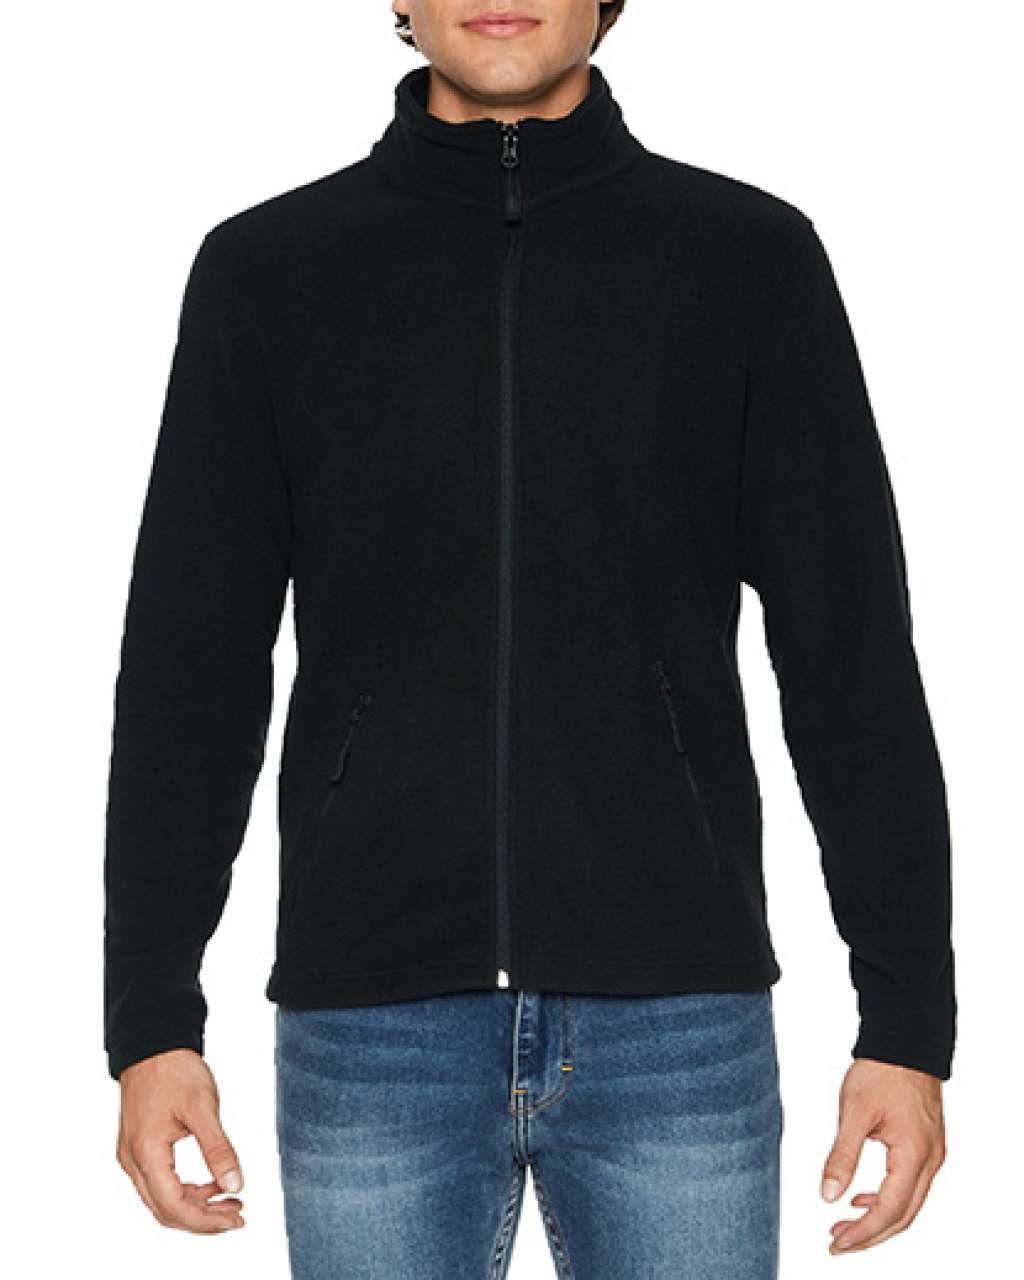 Gildan Hammer Unisex Micro-fleece Jacket - černá